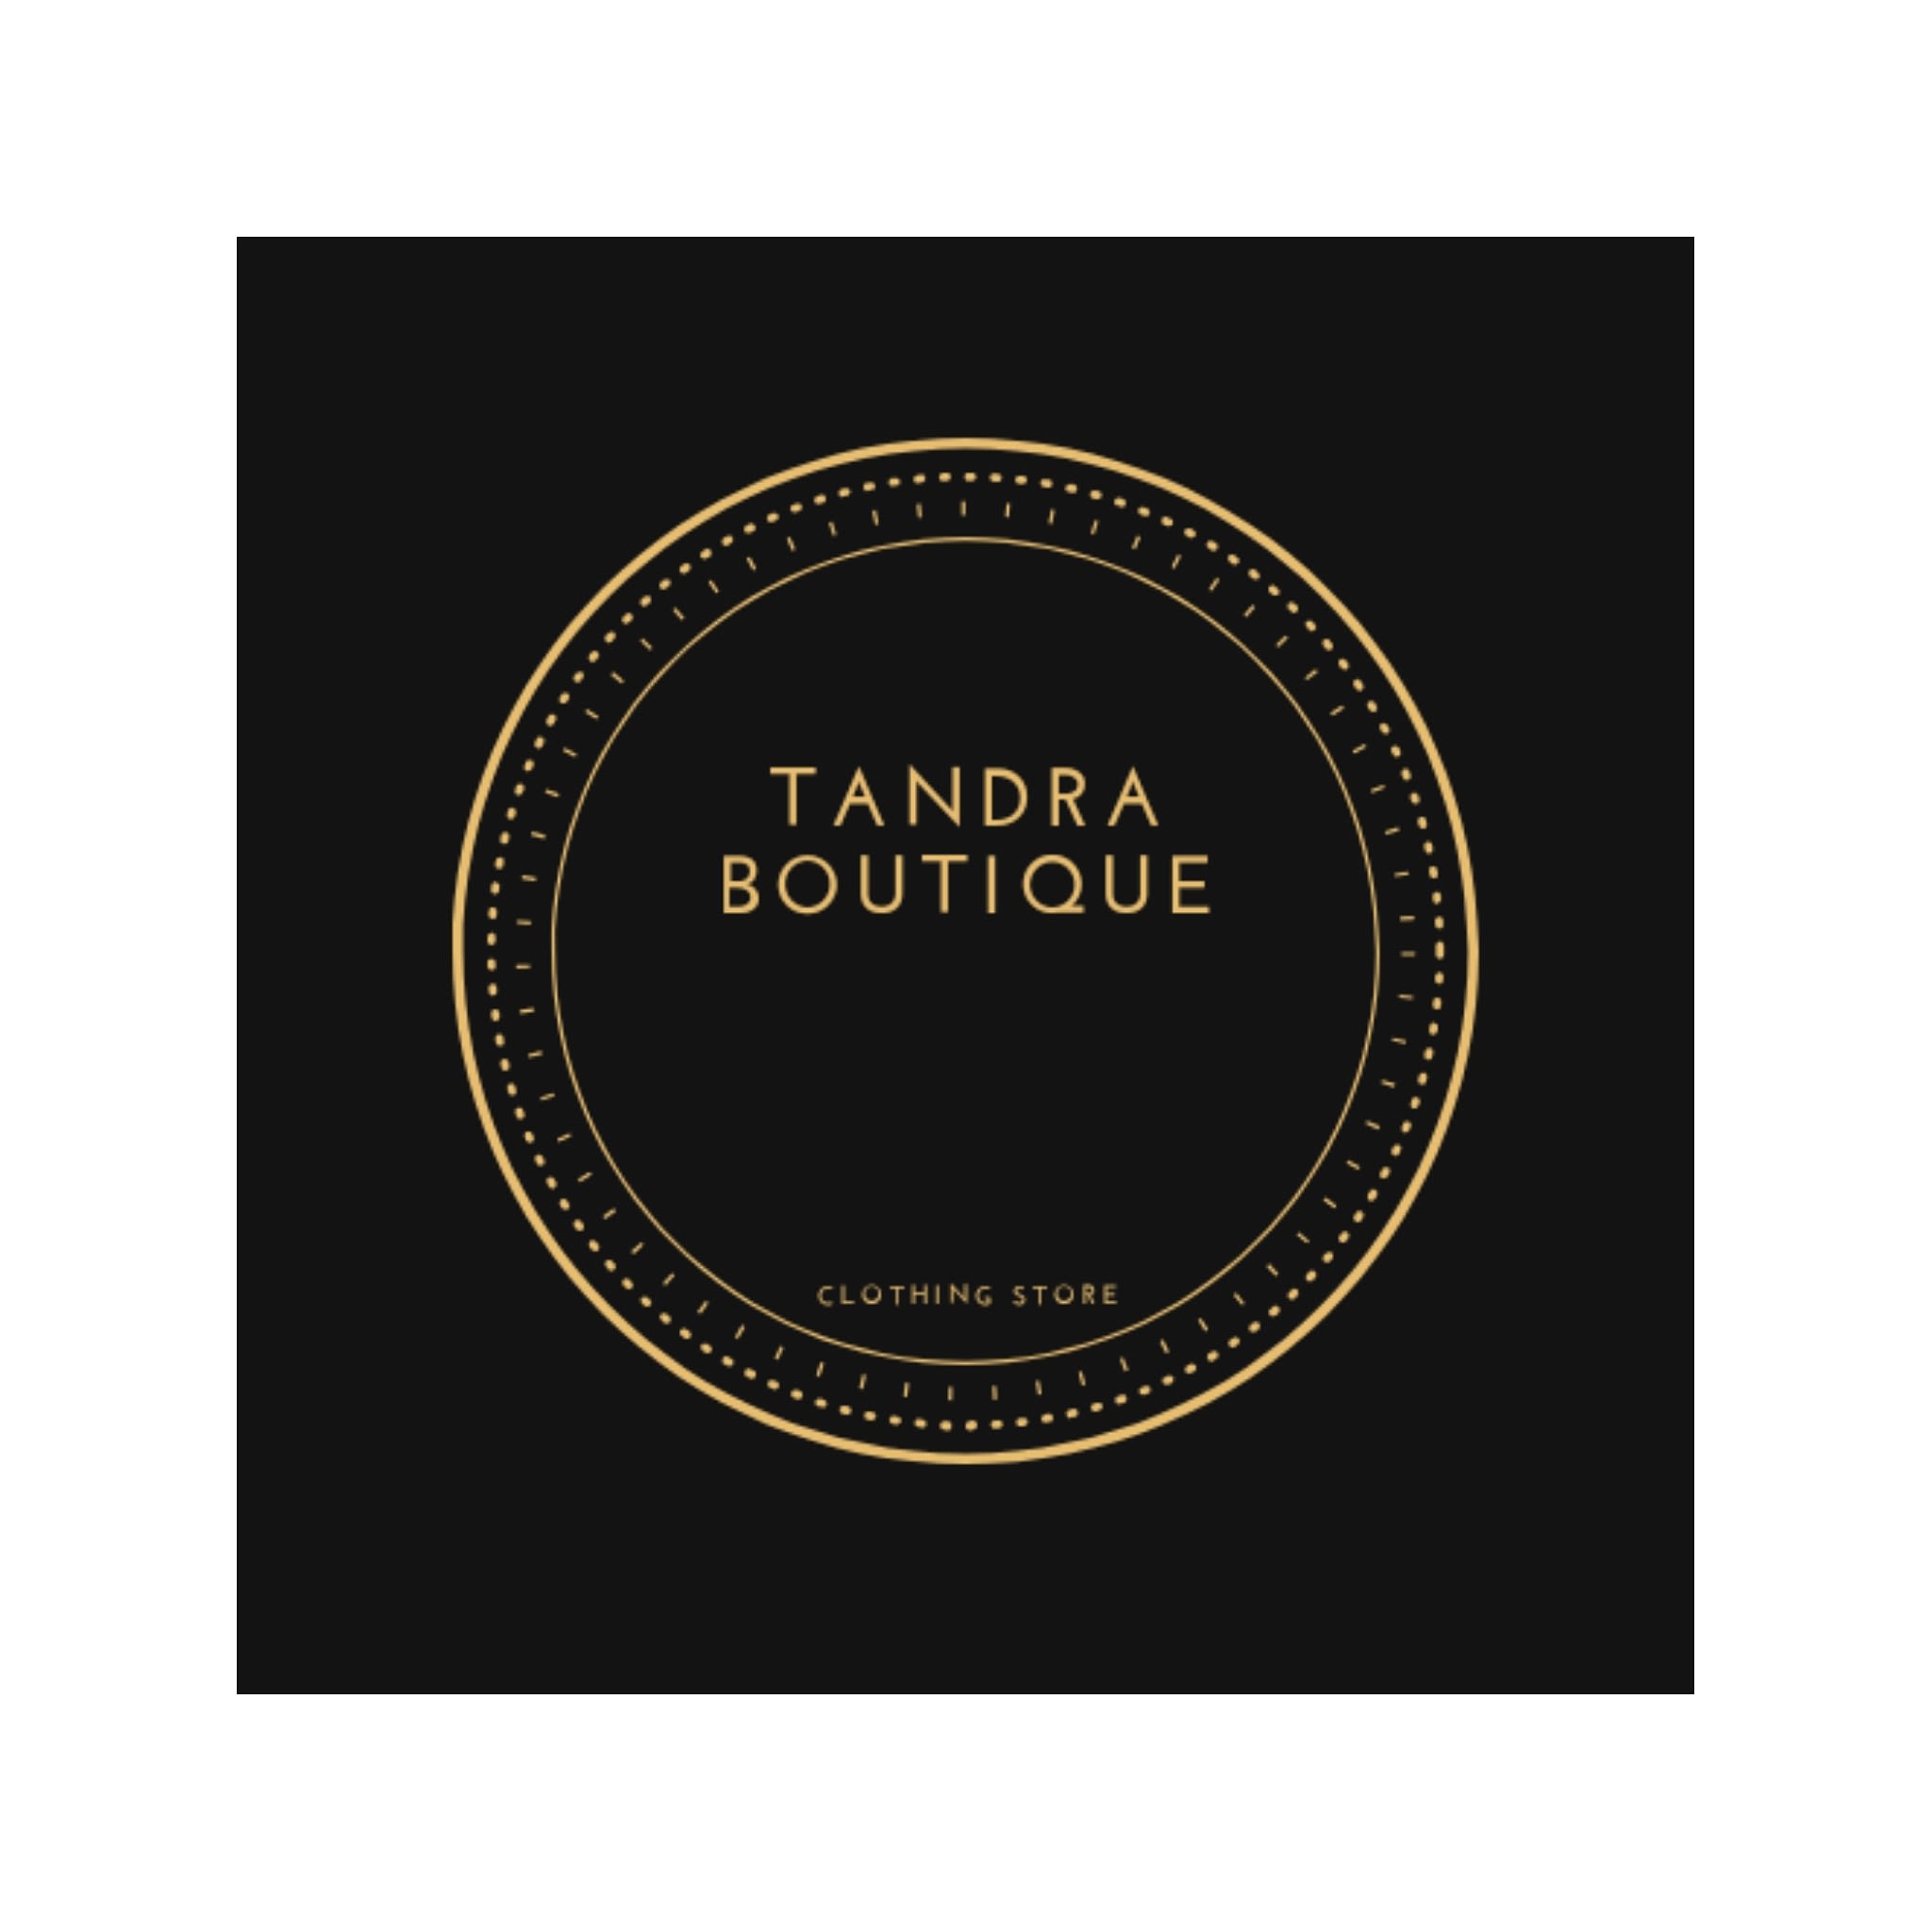 Tandra Boutique